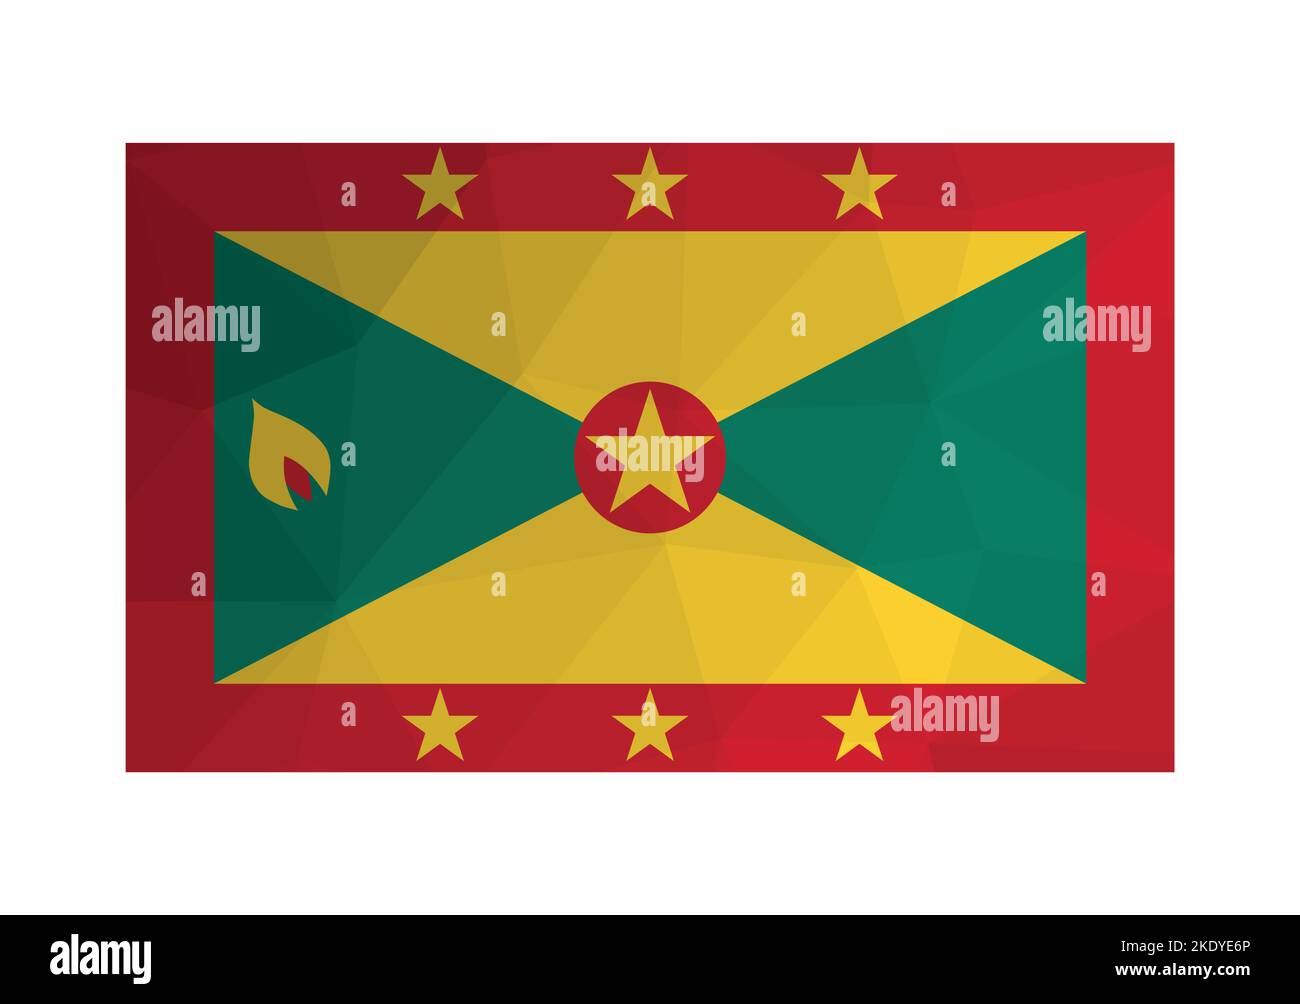 Illustration vectorielle. ensign officiel de Grenade. Drapeau national rouge, vert, jaune avec étoiles et noix de muscade. Conception créative de style polygonal Illustration de Vecteur